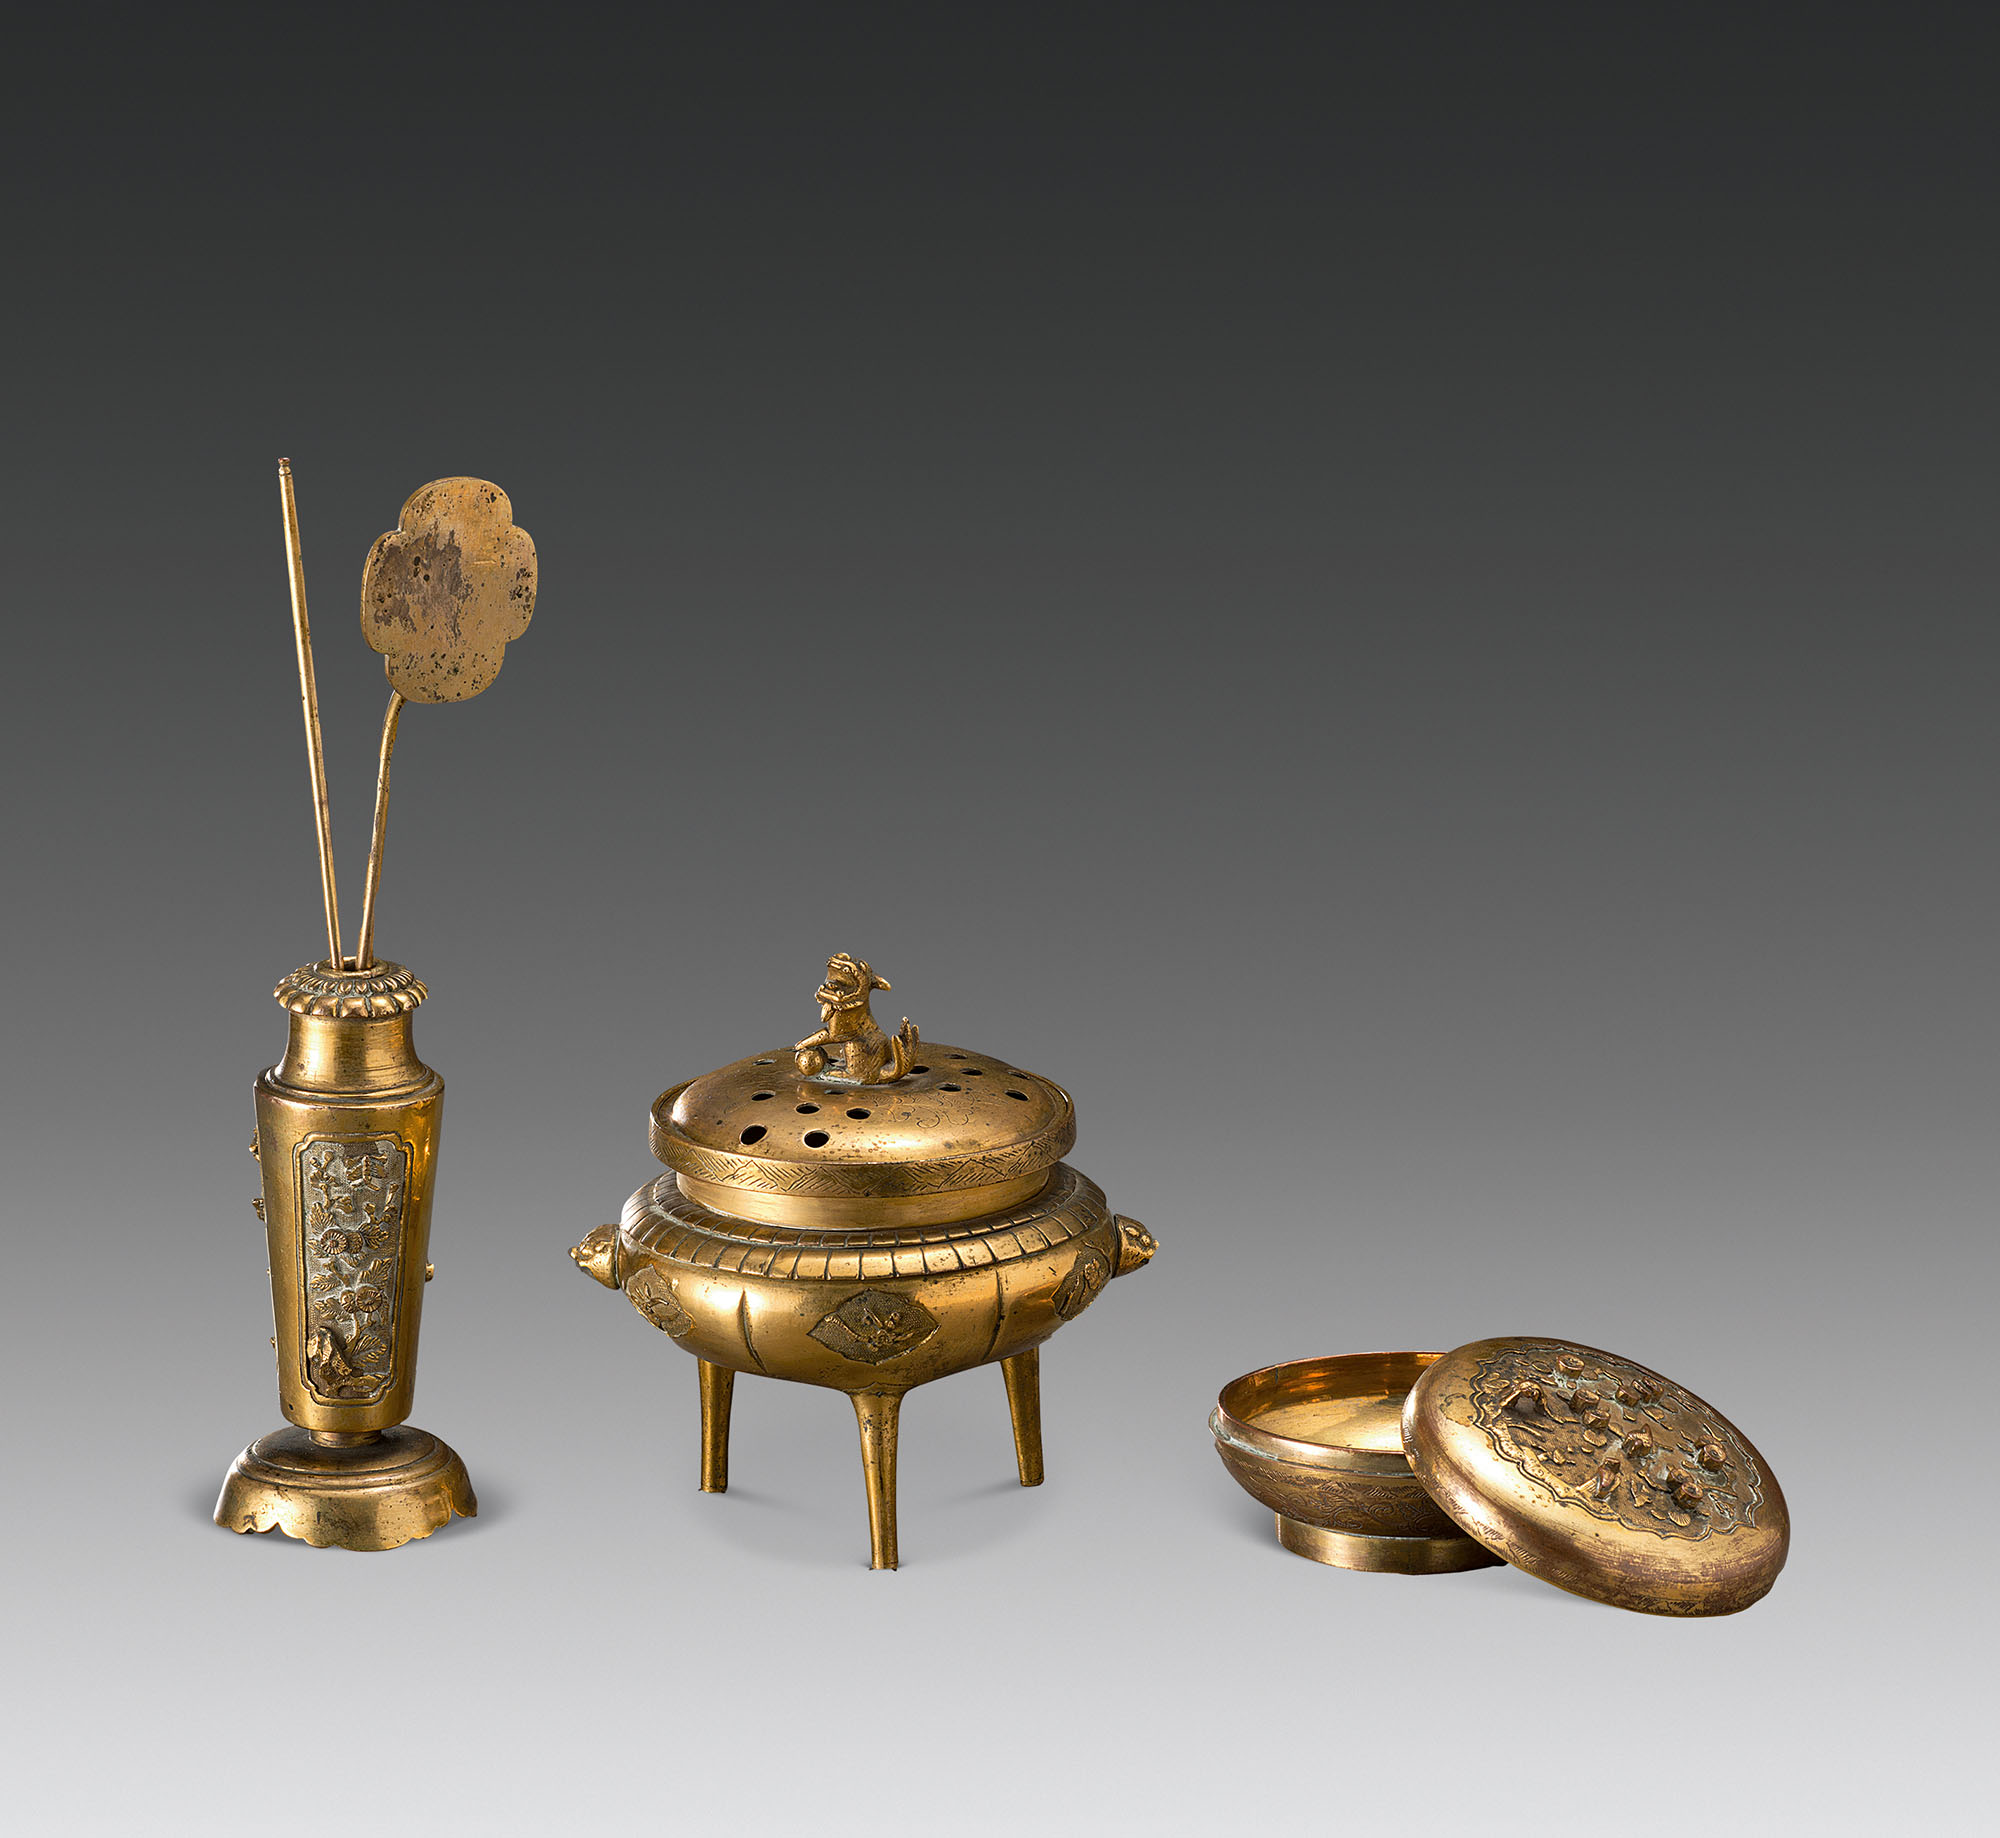 轶名,18世纪铜鎏金炉瓶三事,轶名作品拍卖预展,轶名作品拍卖价格,成都八